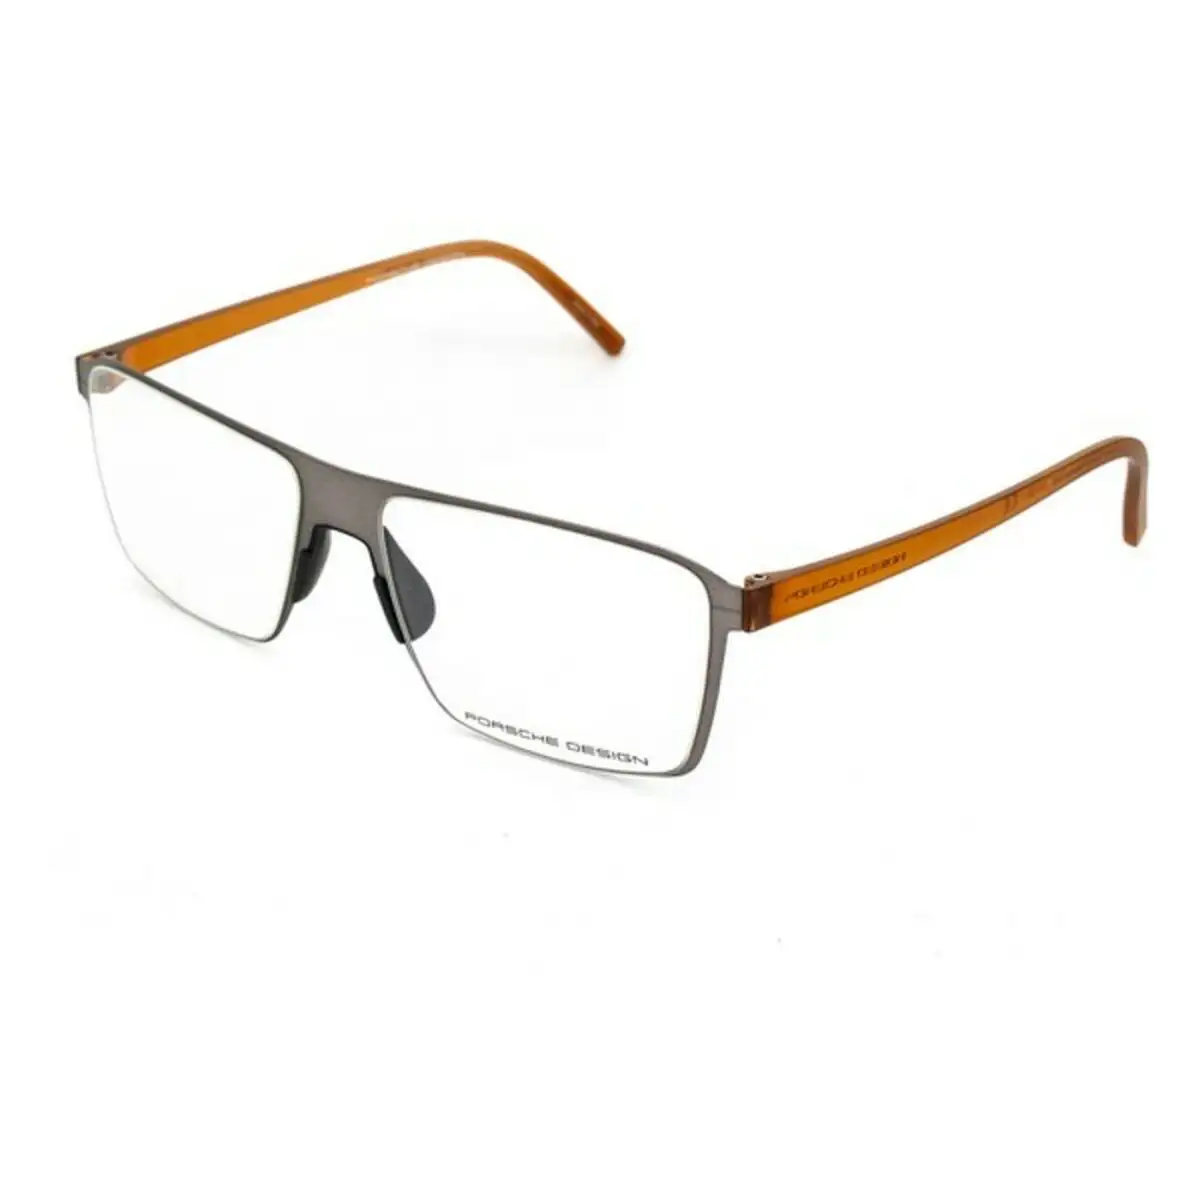 Monture de lunettes homme porsche p8309 b gris o 54 mm _1013. DIAYTAR SENEGAL - Votre Destination Shopping pour Tous. Parcourez notre boutique en ligne et découvrez une variété de produits pour satisfaire tous vos besoins et désirs.